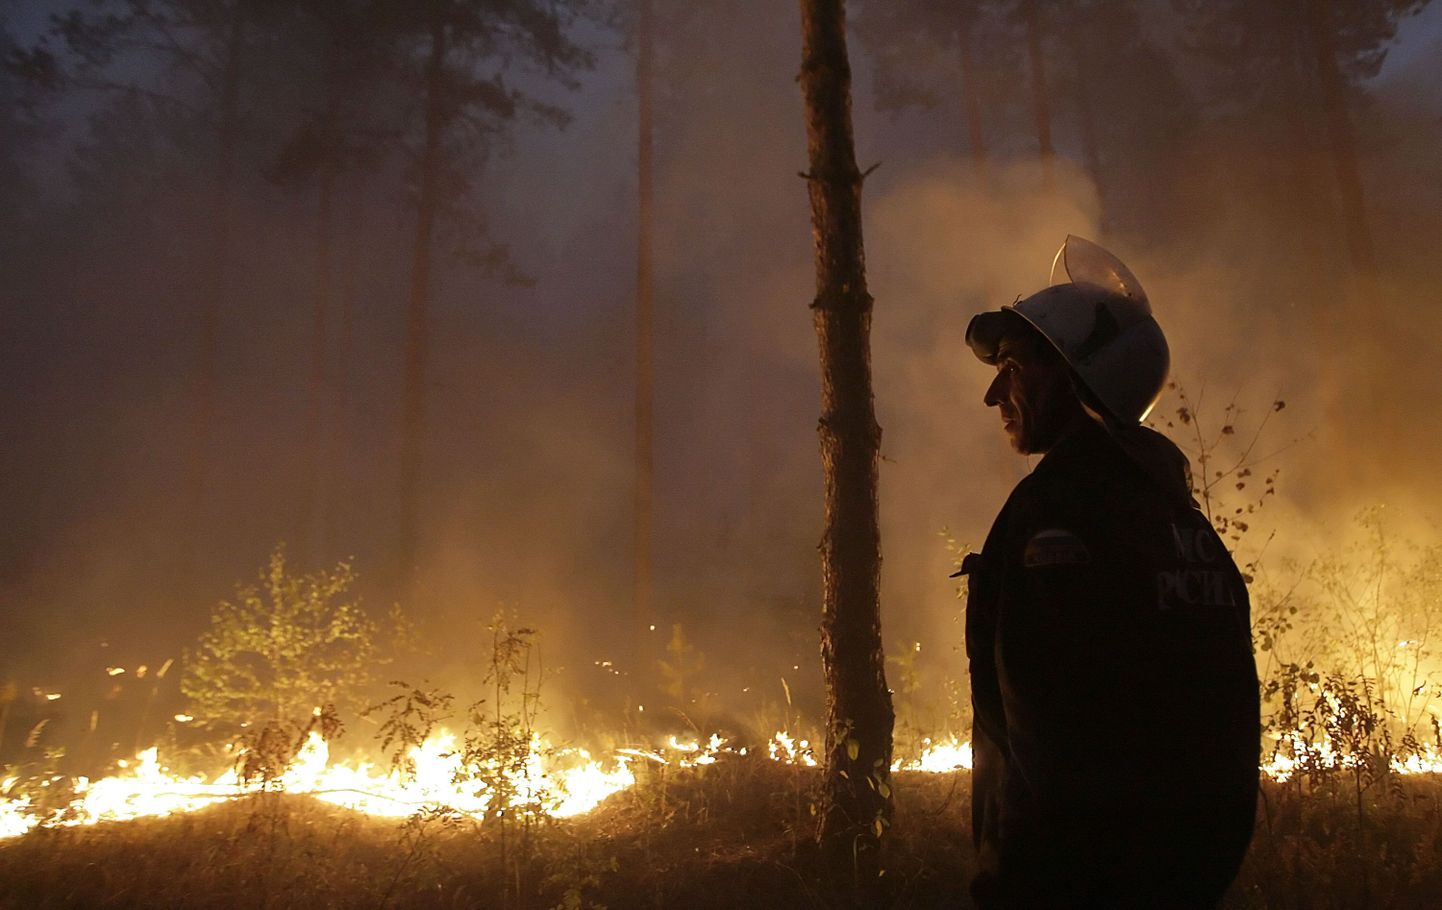 Vene tuletõrjuja metsapõlengu juures.